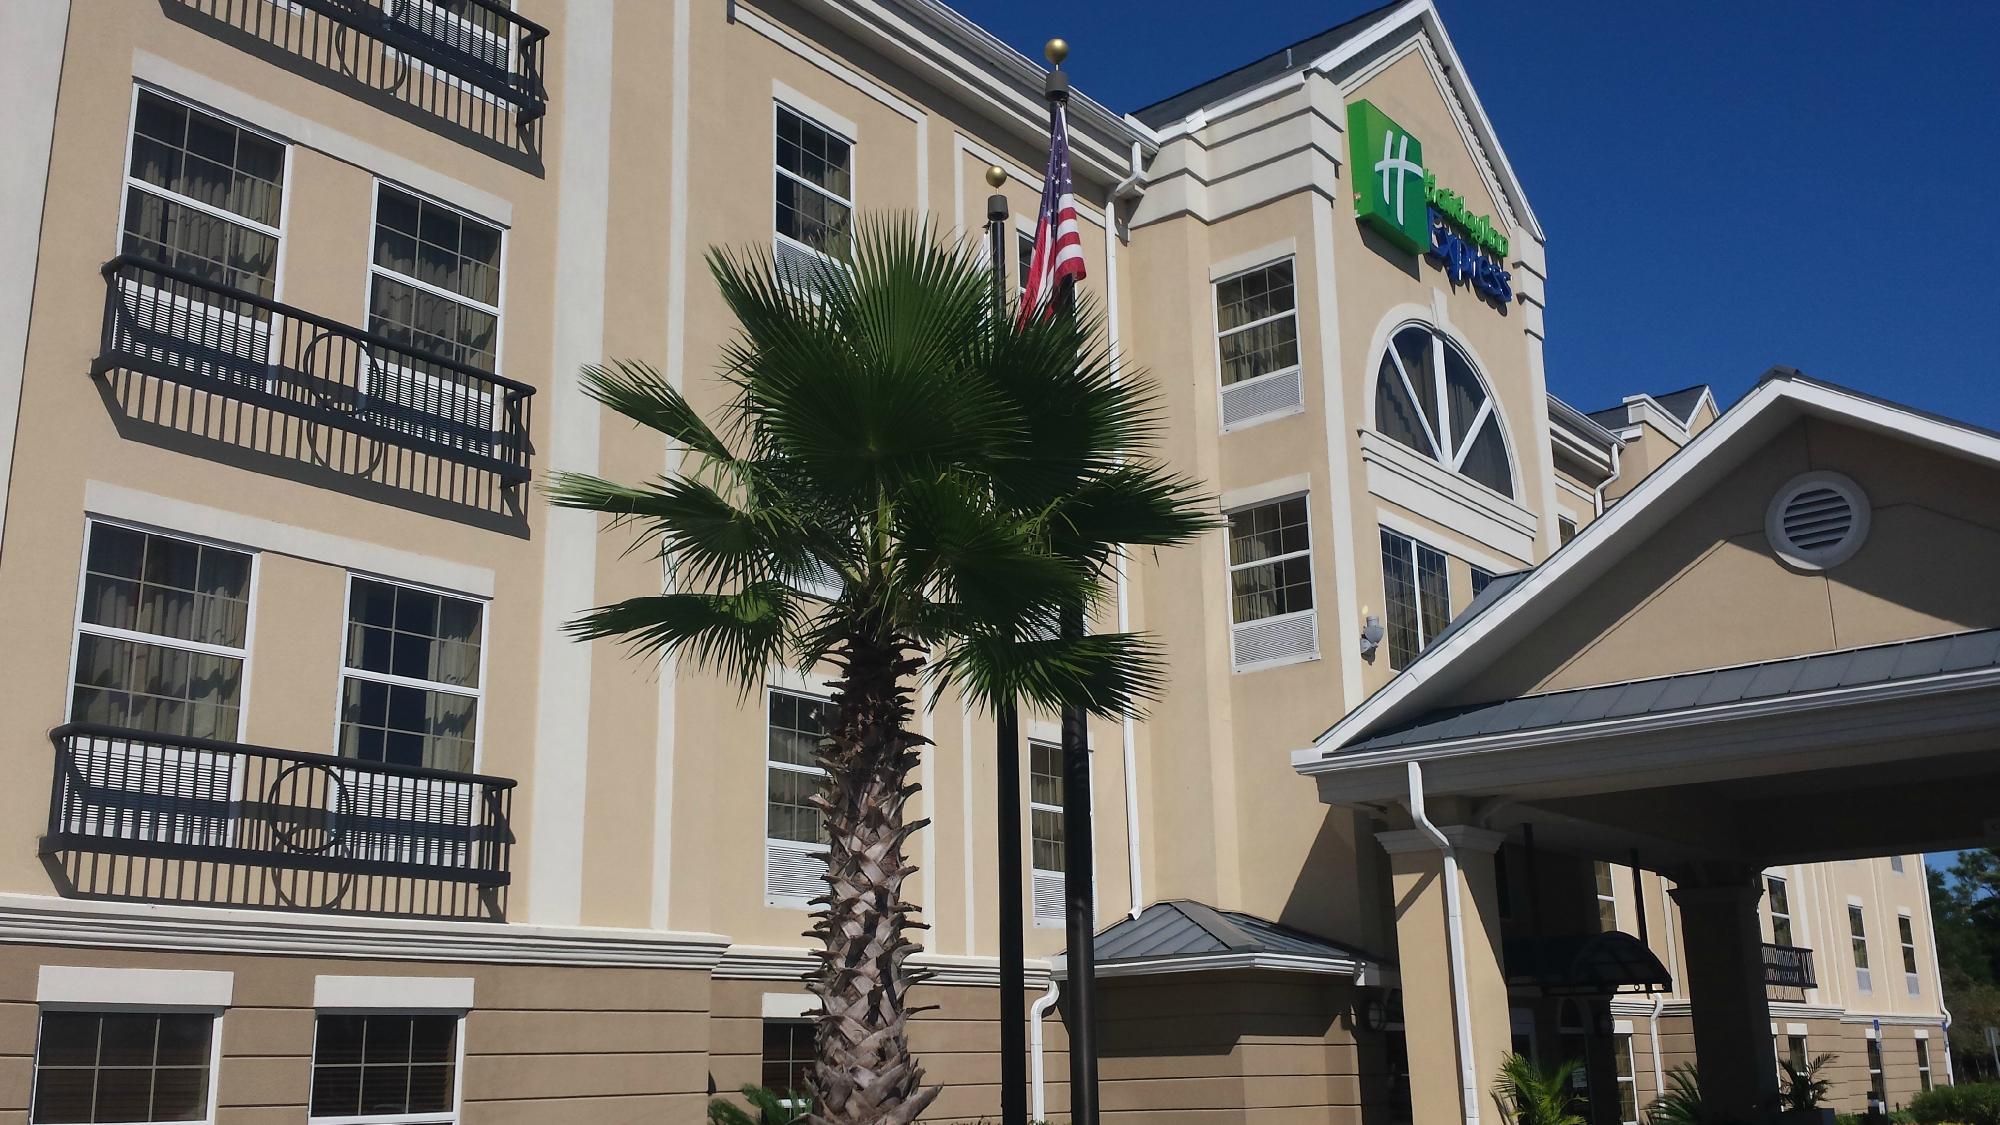 Photo of Holiday Inn Express Jacksonville East, Jacksonville, FL